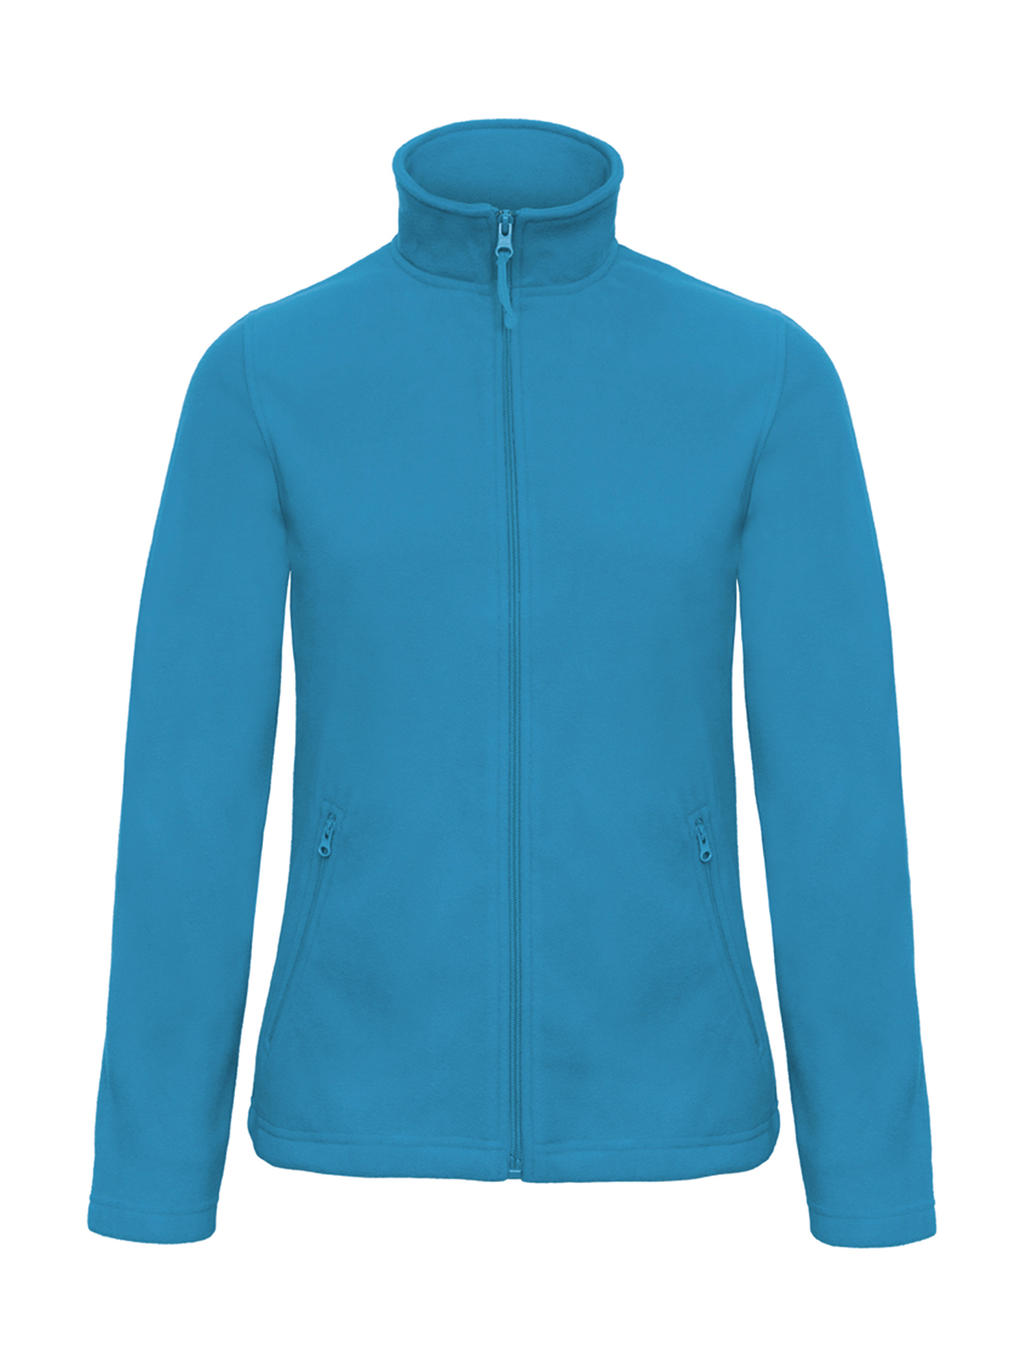 Mikina dámská B&C Micro Fleece - světle modrá, S